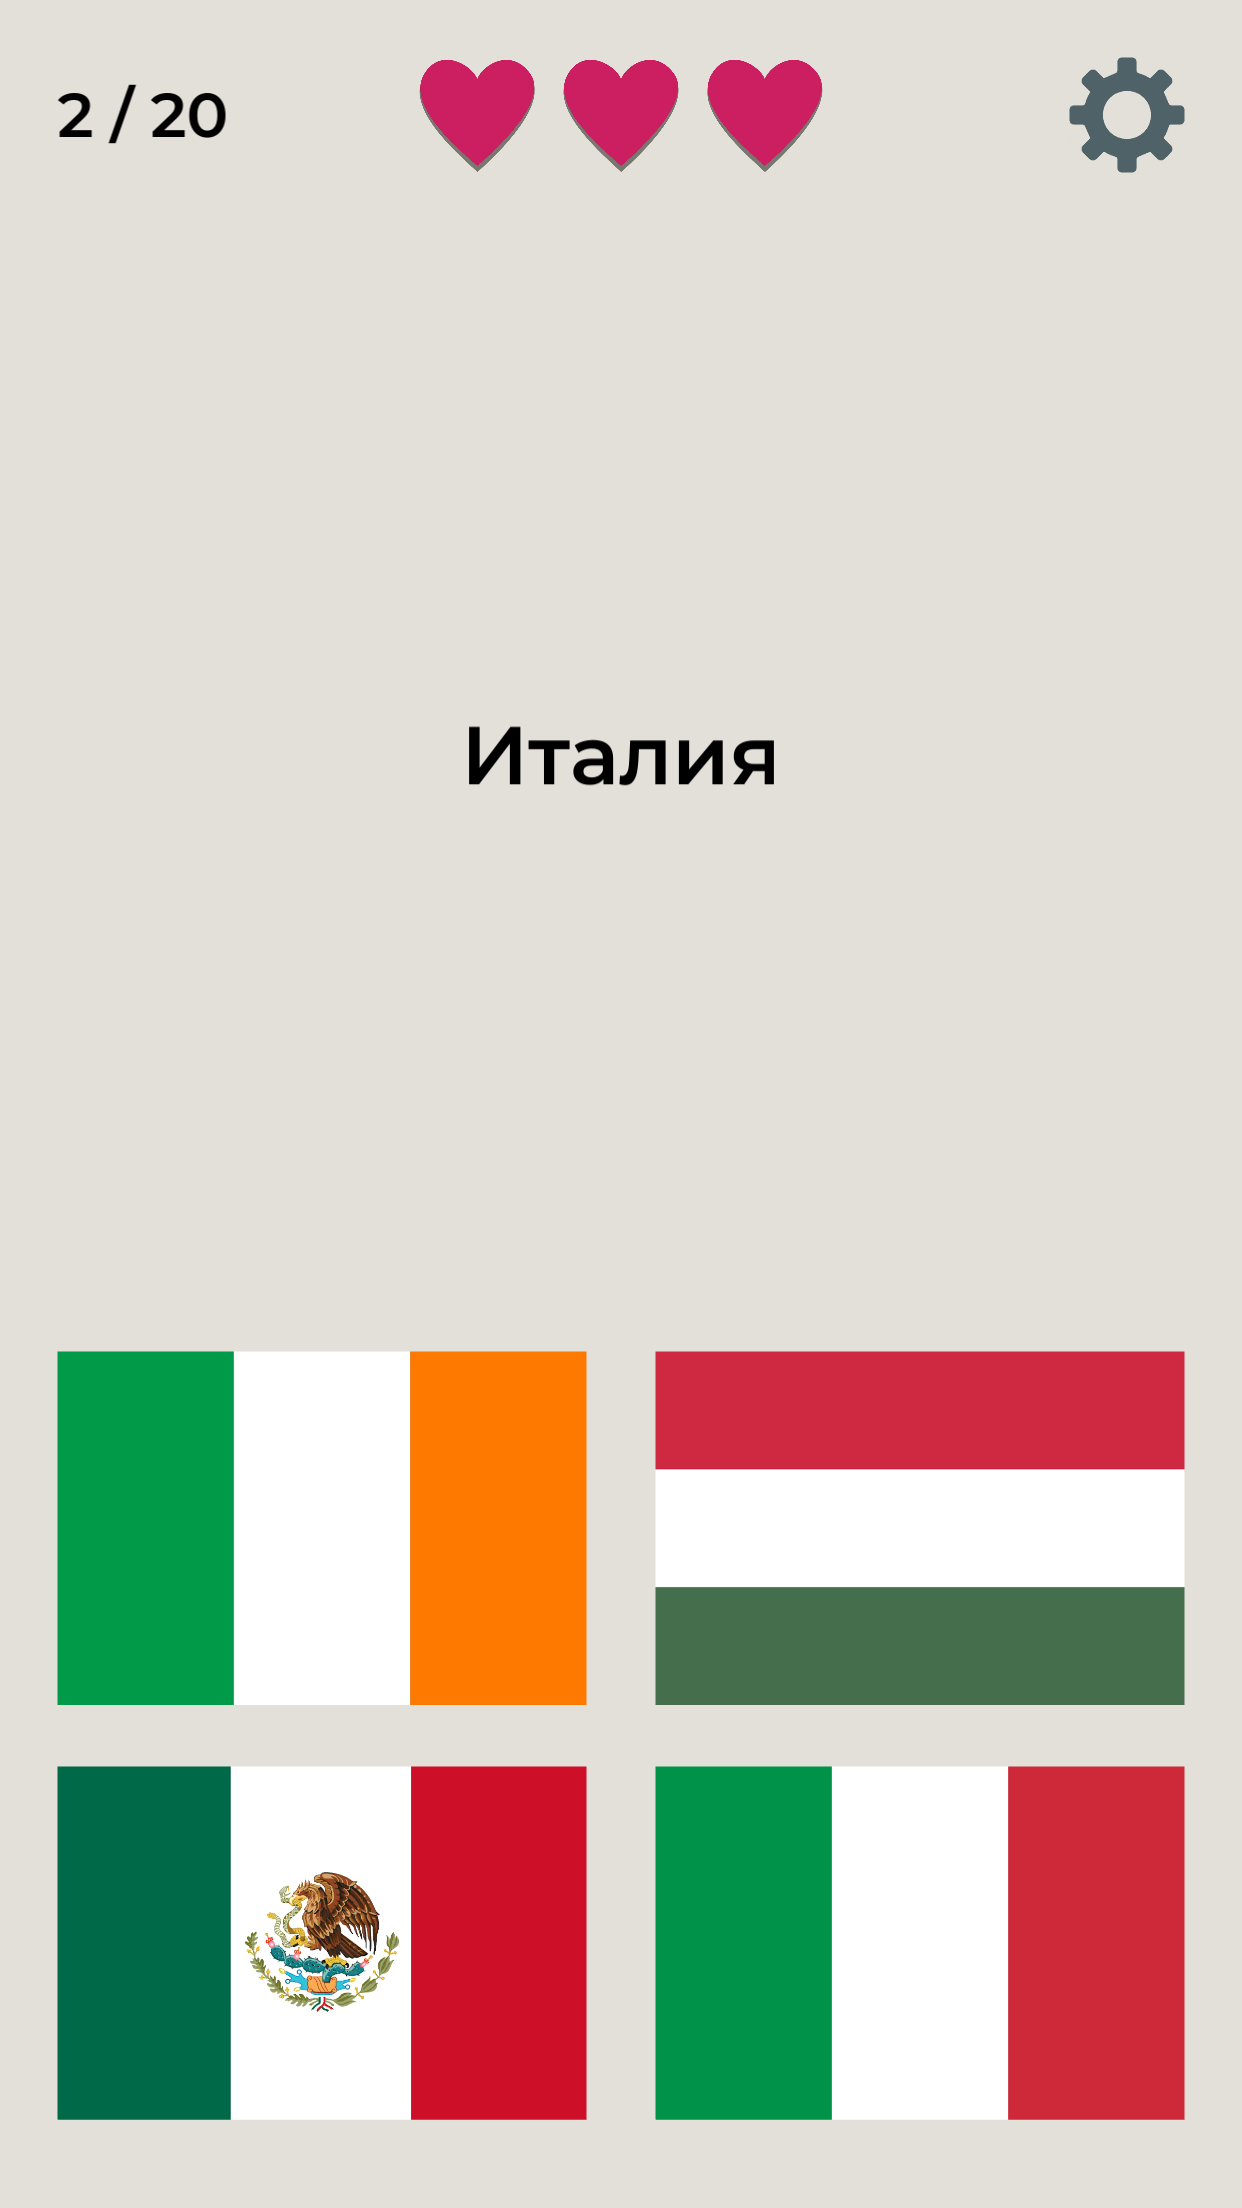 Игра Флагов Викторина — играть онлайн бесплатно на сервисе Яндекс Игры